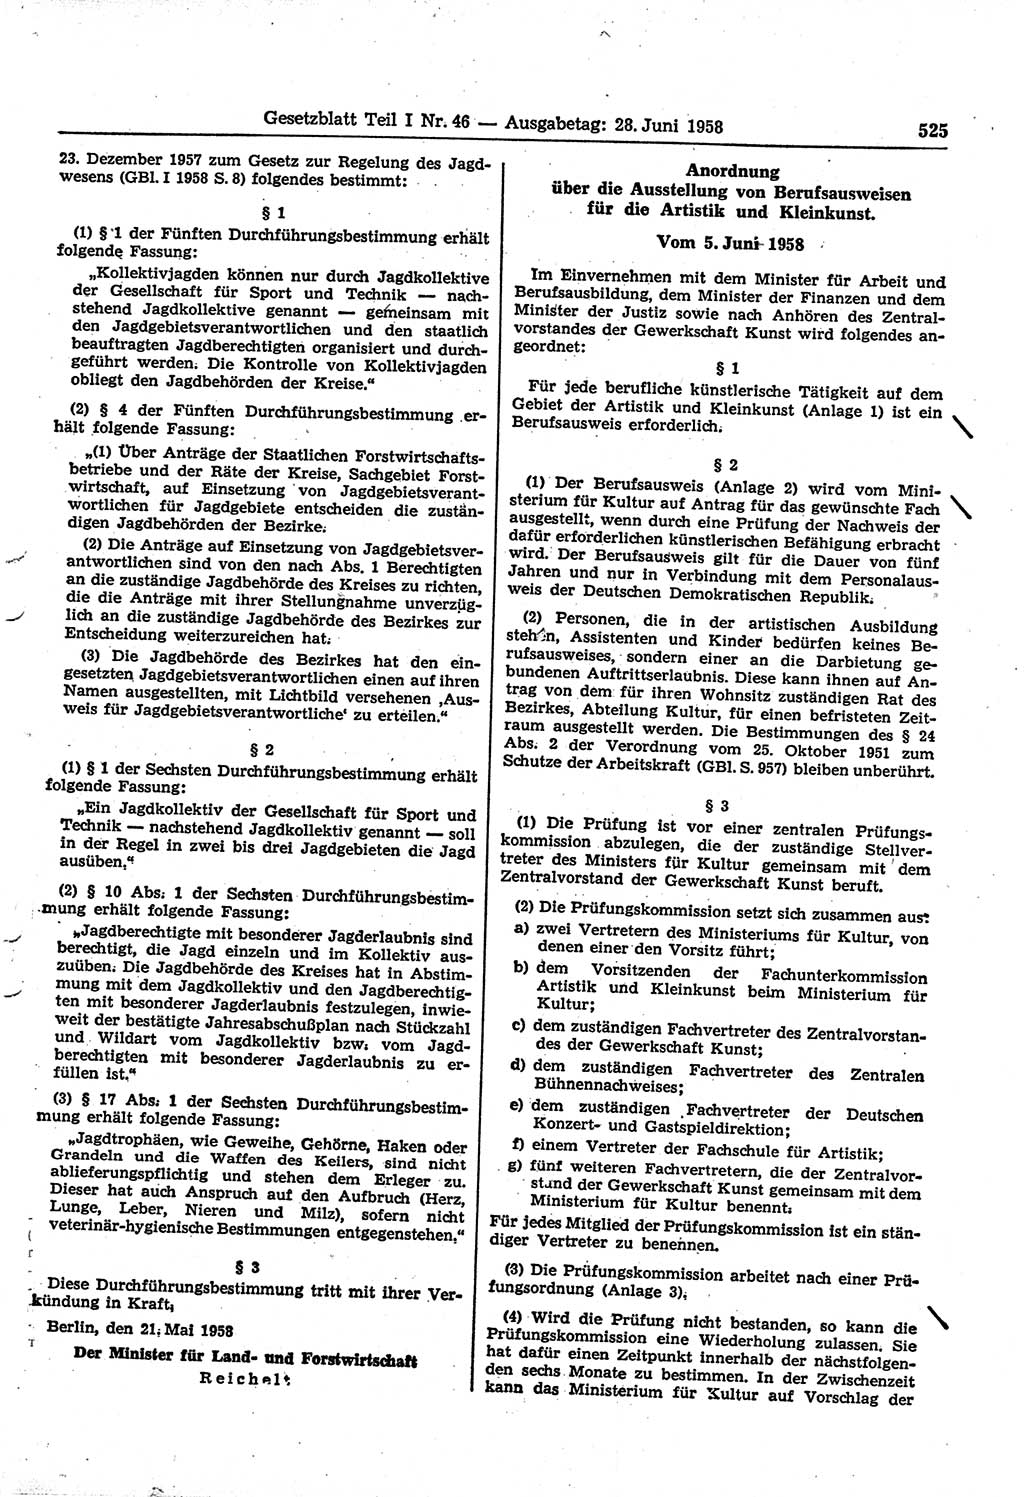 Gesetzblatt (GBl.) der Deutschen Demokratischen Republik (DDR) Teil Ⅰ 1958, Seite 525 (GBl. DDR Ⅰ 1958, S. 525)